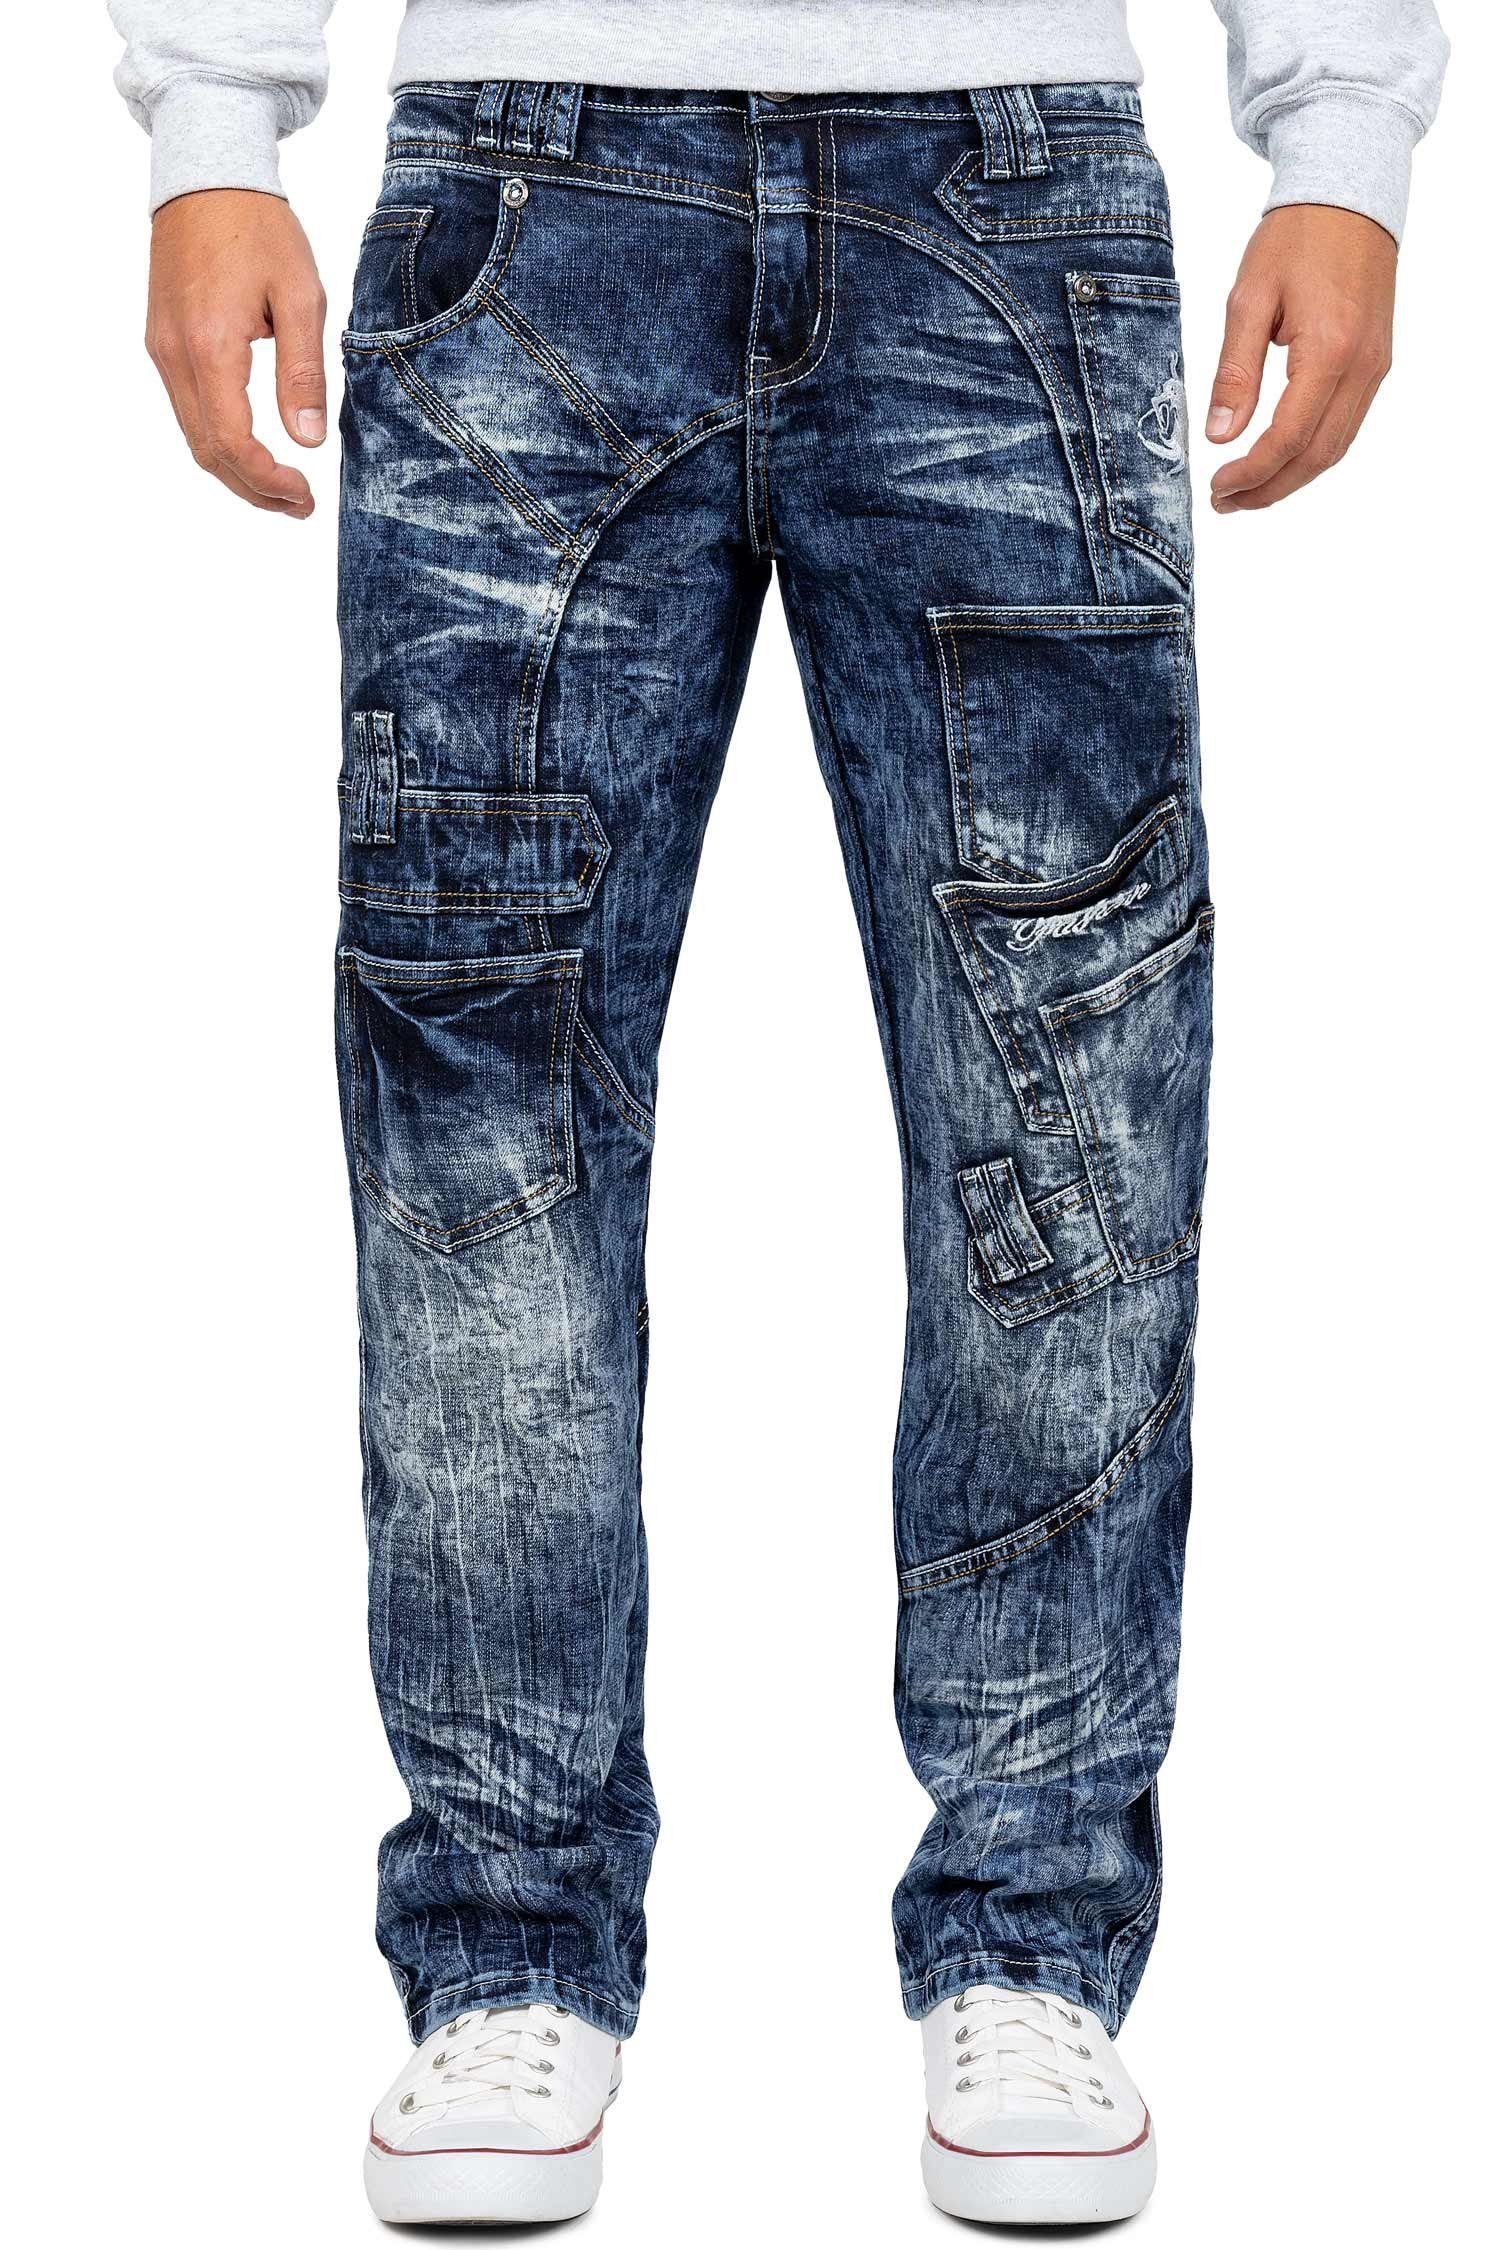 Kosmo Lupo 5-Pocket-Jeans Auffällige Herren Hose BA-KM070 mit Schriftzügen und Verzierungen